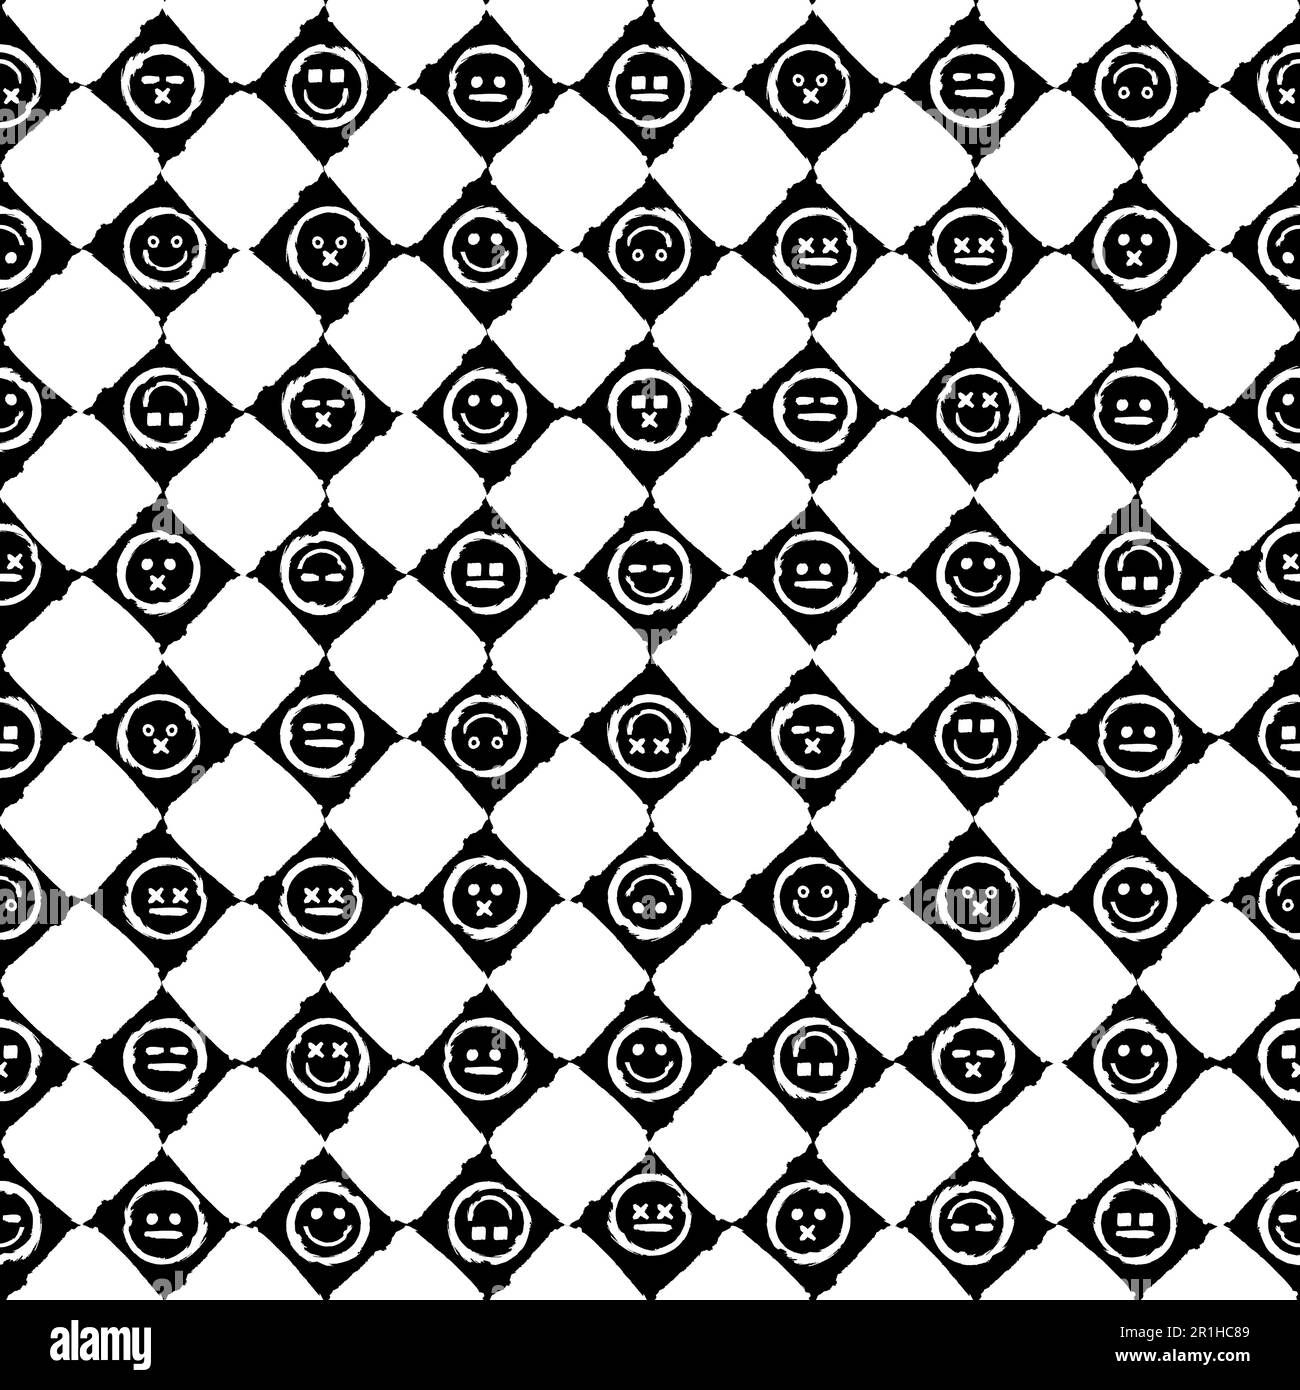 Patrón inconsútil descuidado abstracto con células de ajedrez claras y oscuras y Emoji diferentes expresiones faciales y estados de ánimo. Ornamento para la impresión en tela, co Ilustración del Vector